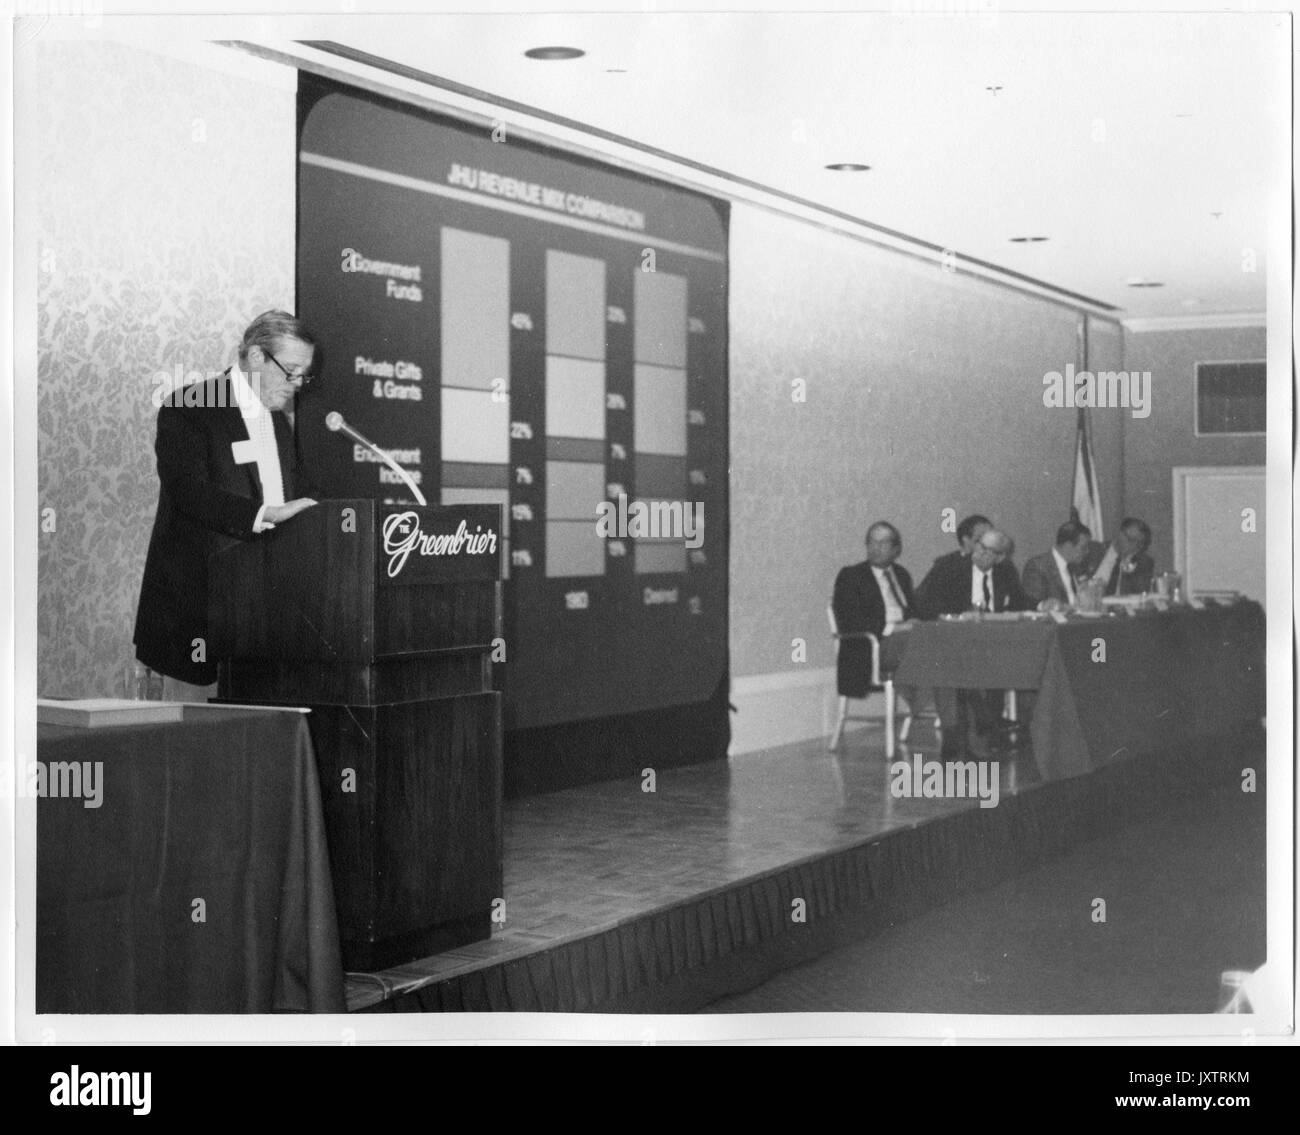 Furlong Baldwin, campagne pour l'Université John Hopkins, Candide Baldwin à la tribune, à gauche du Podium est un tableau de recettes et d'un groupe d'hommes non identifiés, campagne pour l'événement de l'Université Johns Hopkins, 1983. Banque D'Images